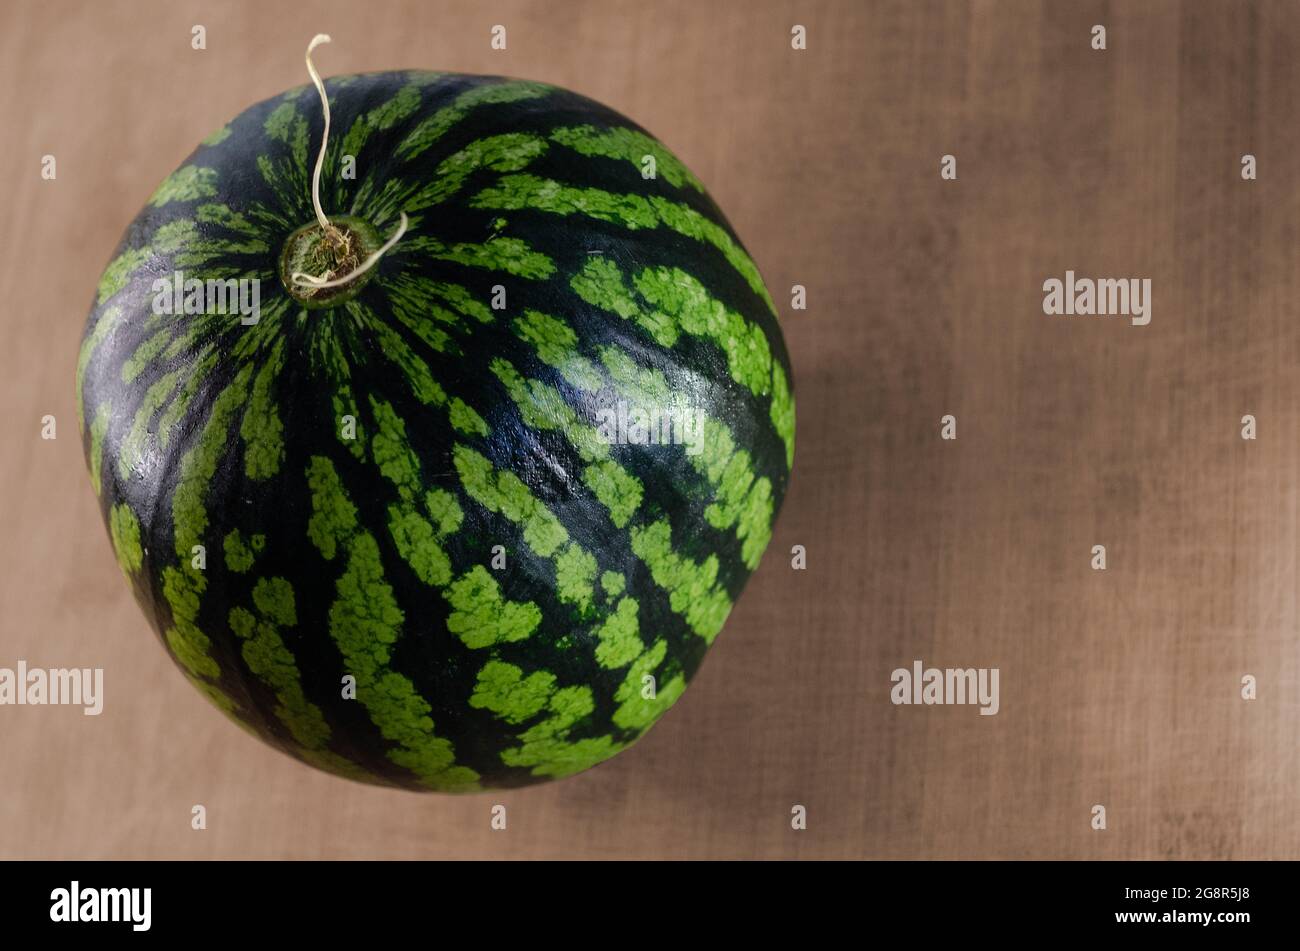 Eine frische, reife Wassermelone auf einem Holzbrett aus einem gehackten Winkel. Konzept der Frucht für den Sommer essen Stockfoto